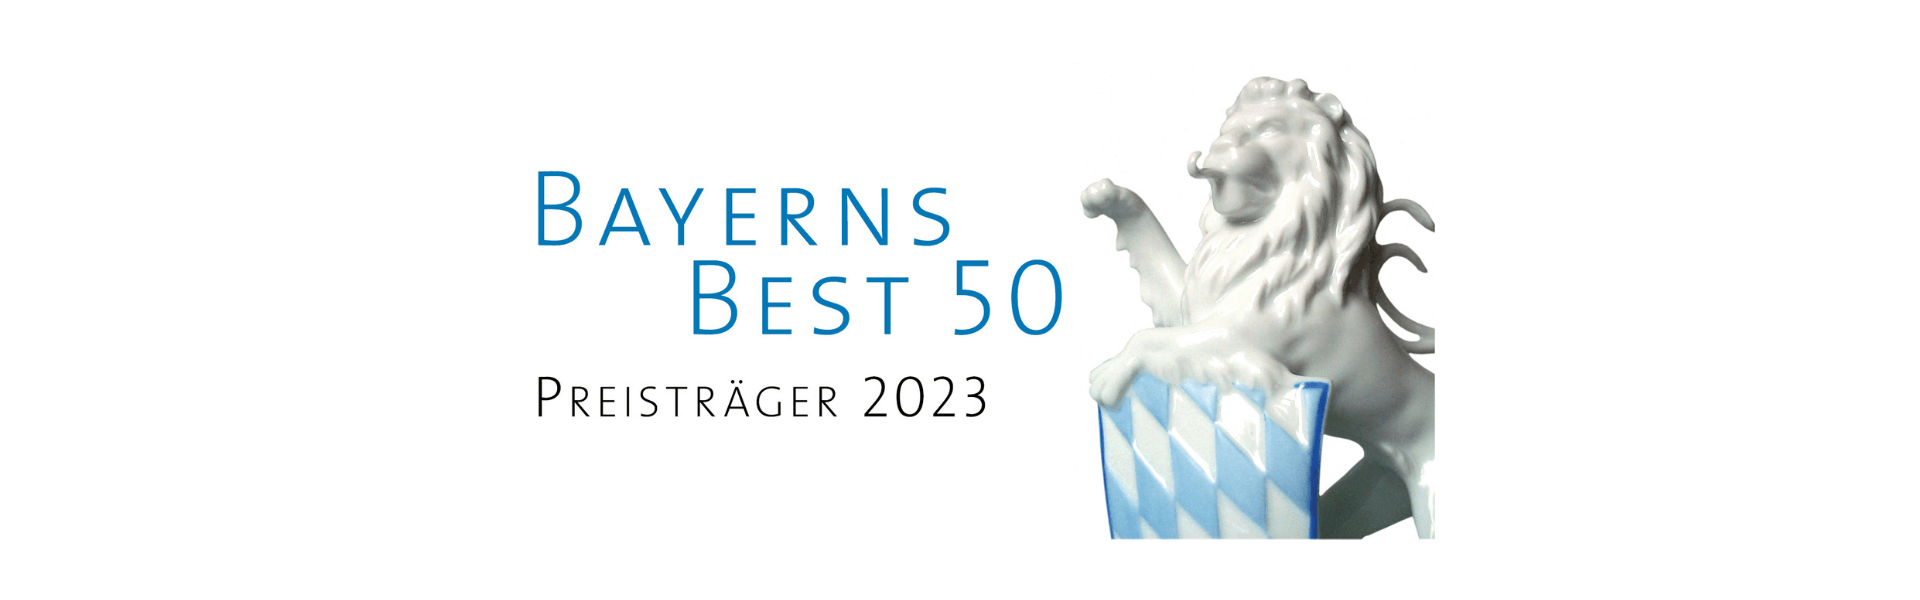 BBW Lasertechnik ausgezeichnet: BAYERNS BEST 50 Preisträger 2023